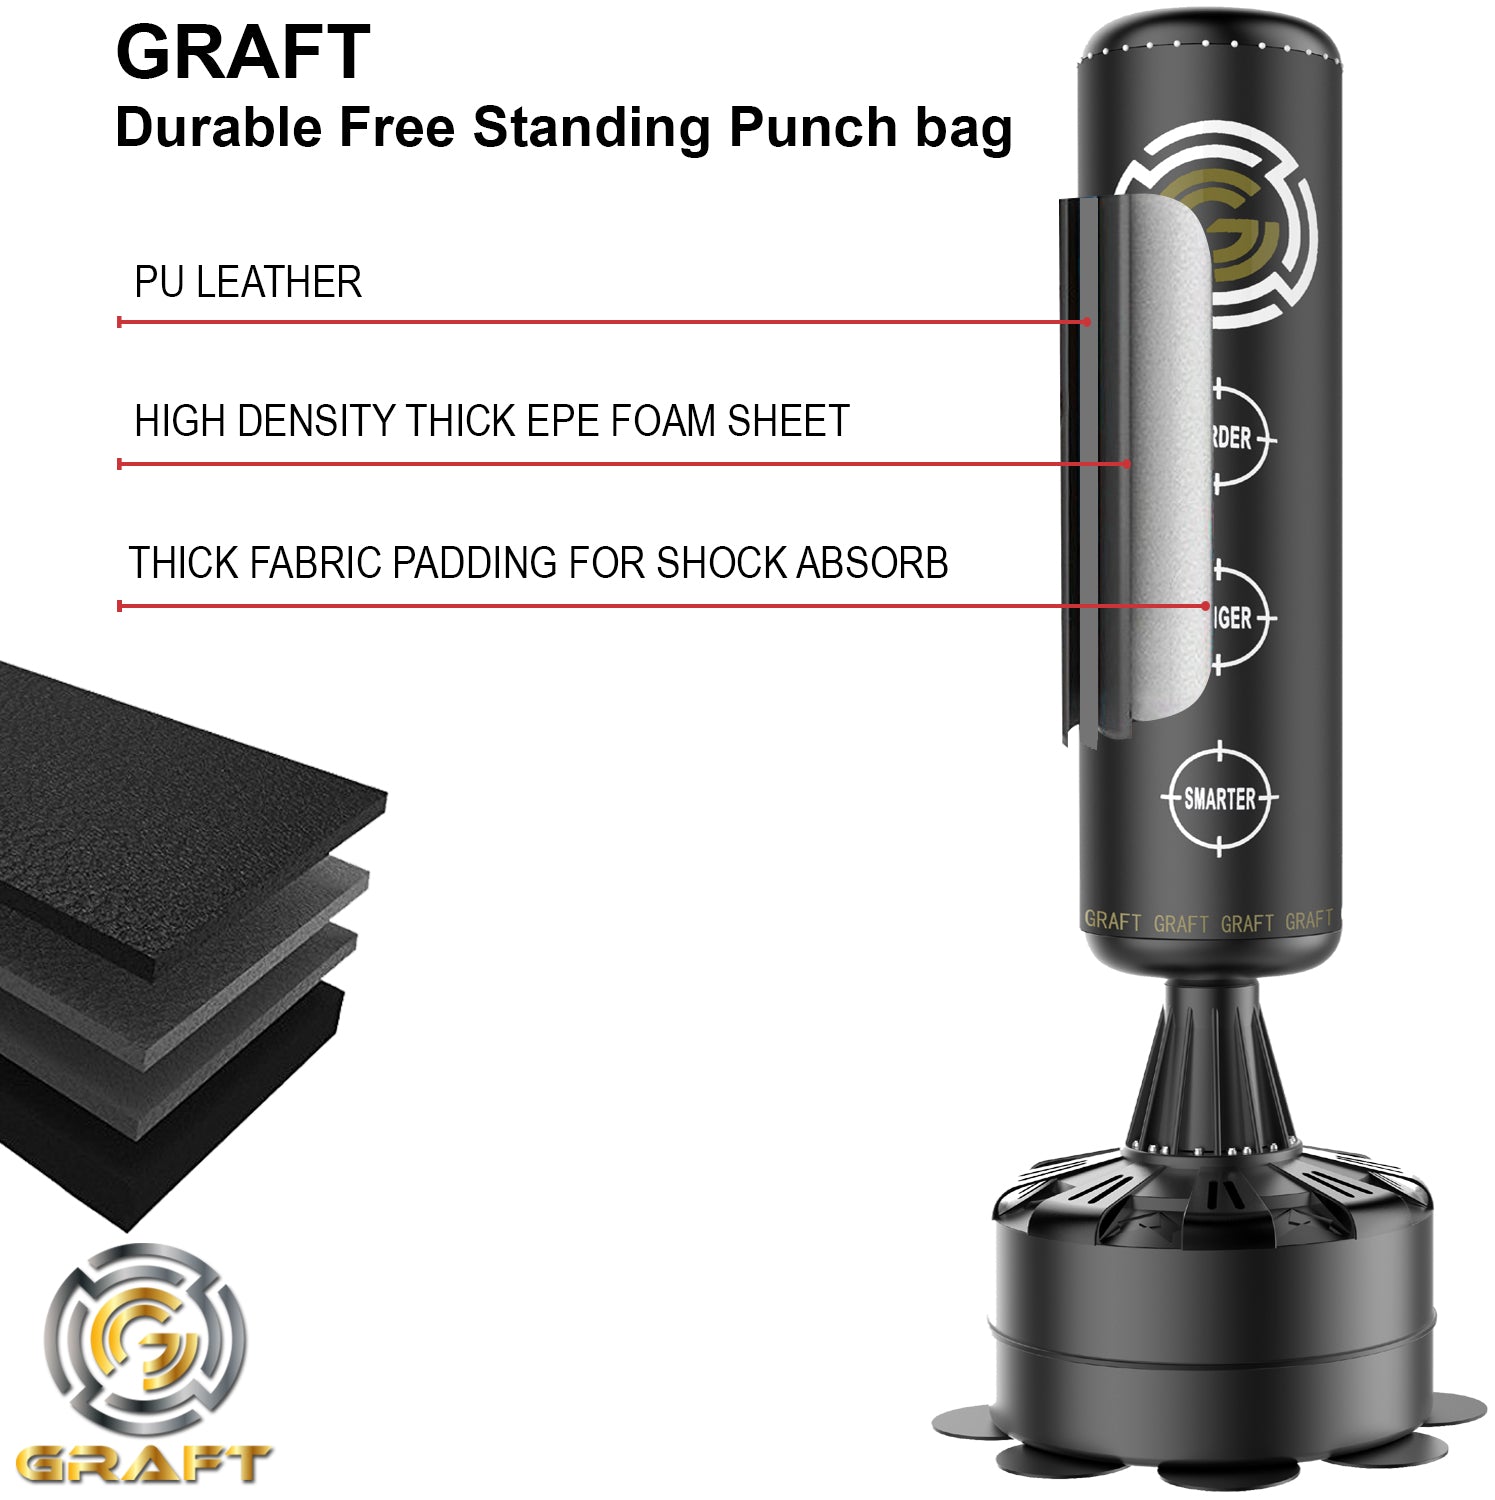 Free standing punching bag